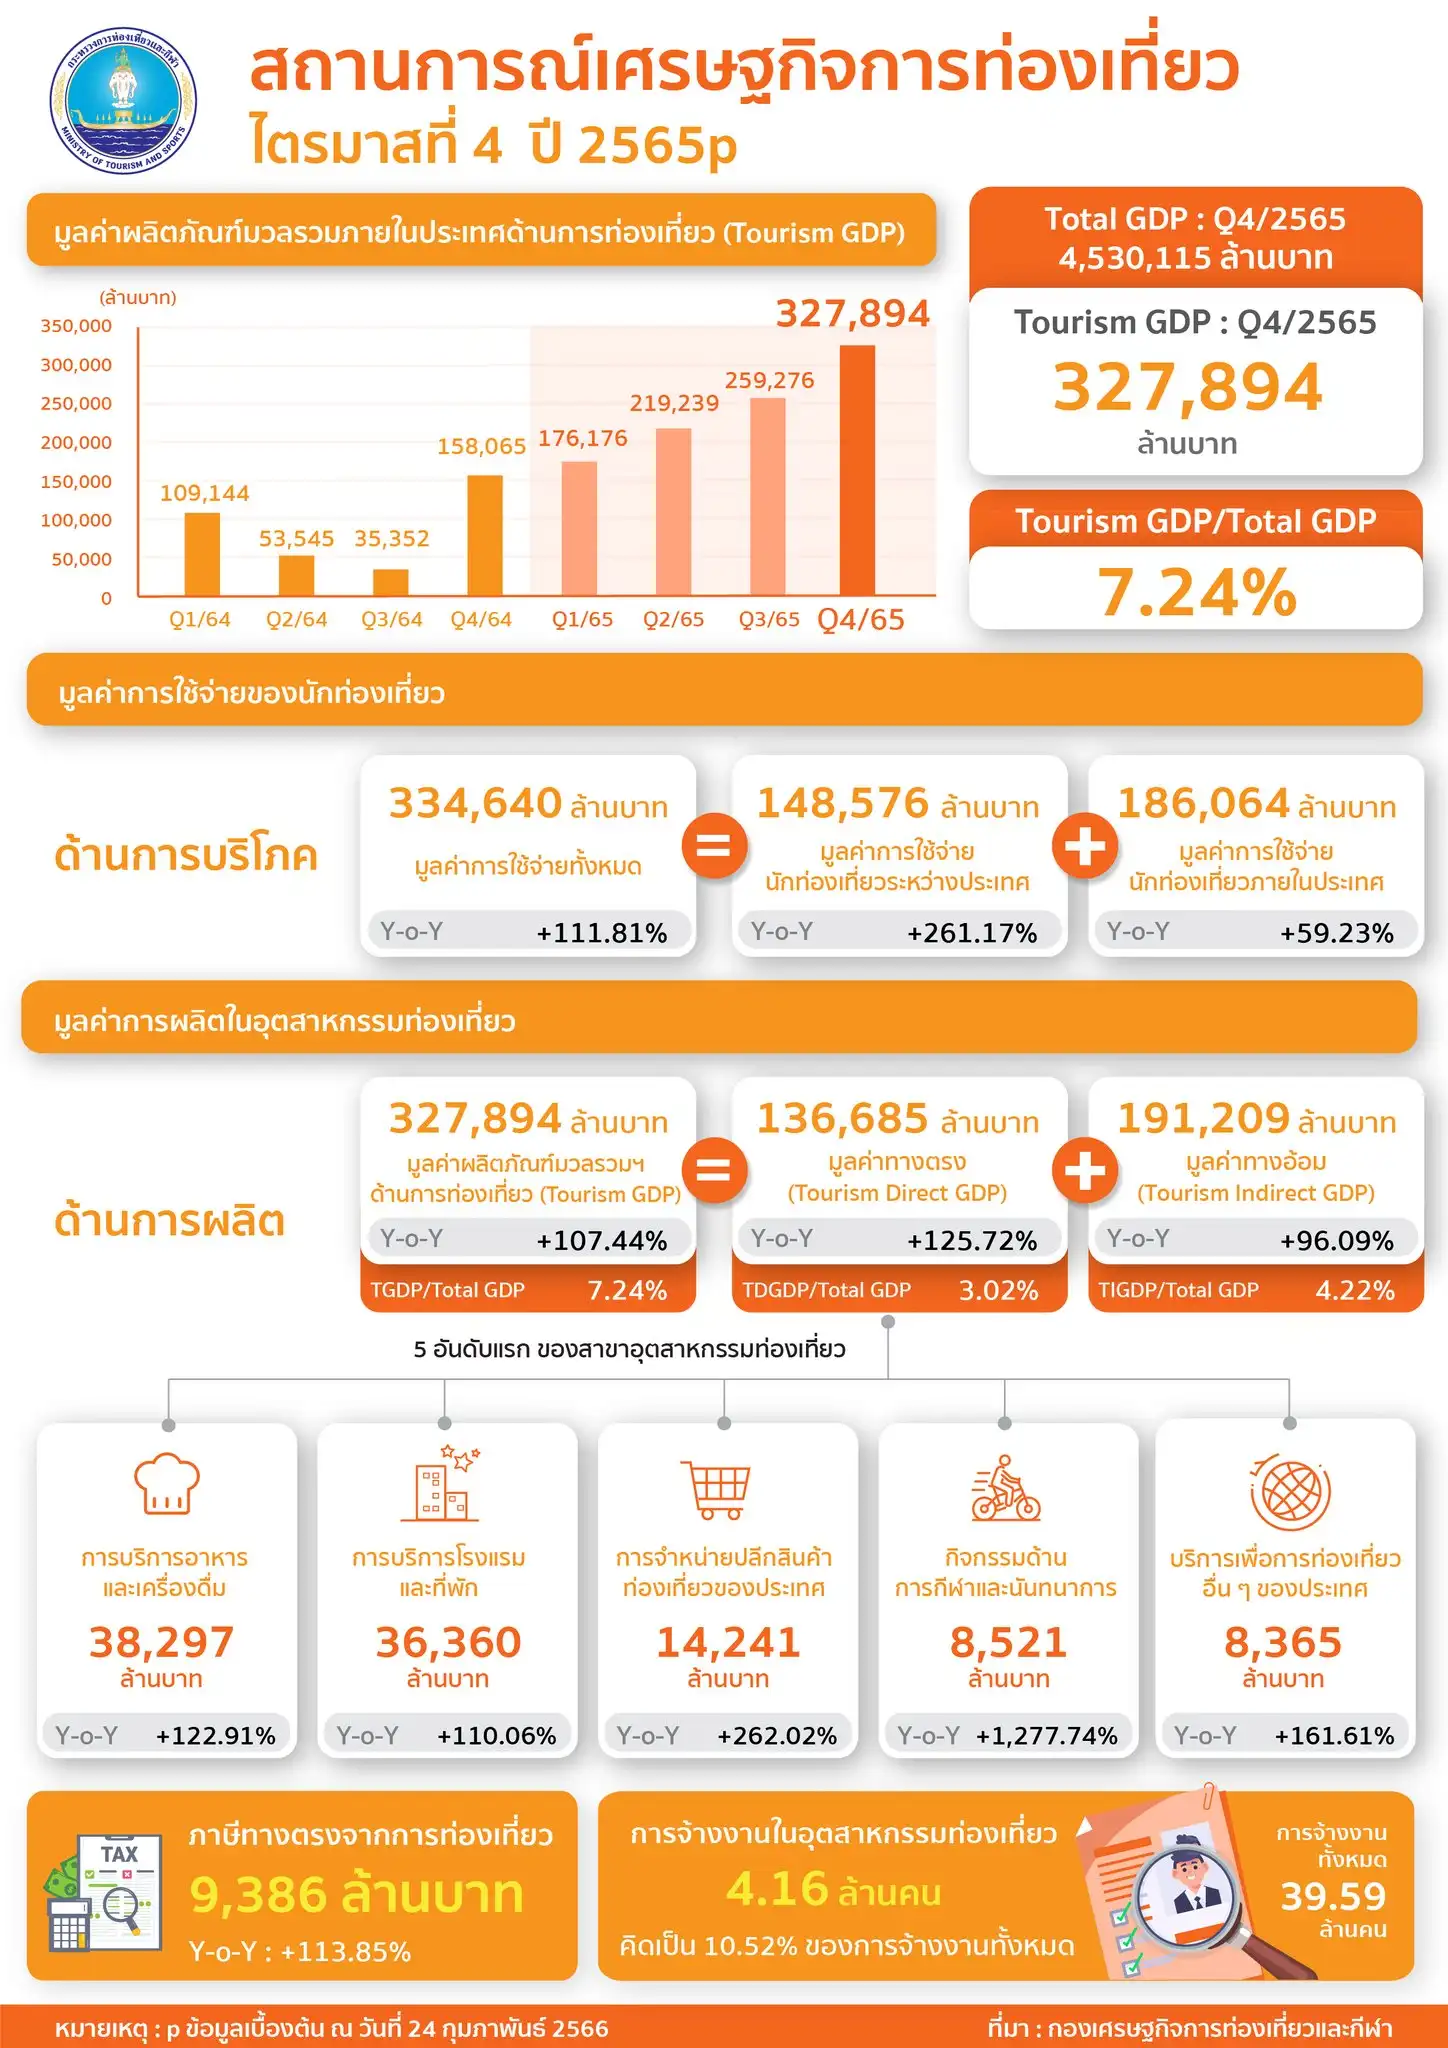 สรุปมูลค่า GDP เศรษฐกิจท่องเที่ยวไทย ปี 2565 รวม 9.8 แสนล้าน การบริโภค 1.01 ล้านล้าน HealthServ